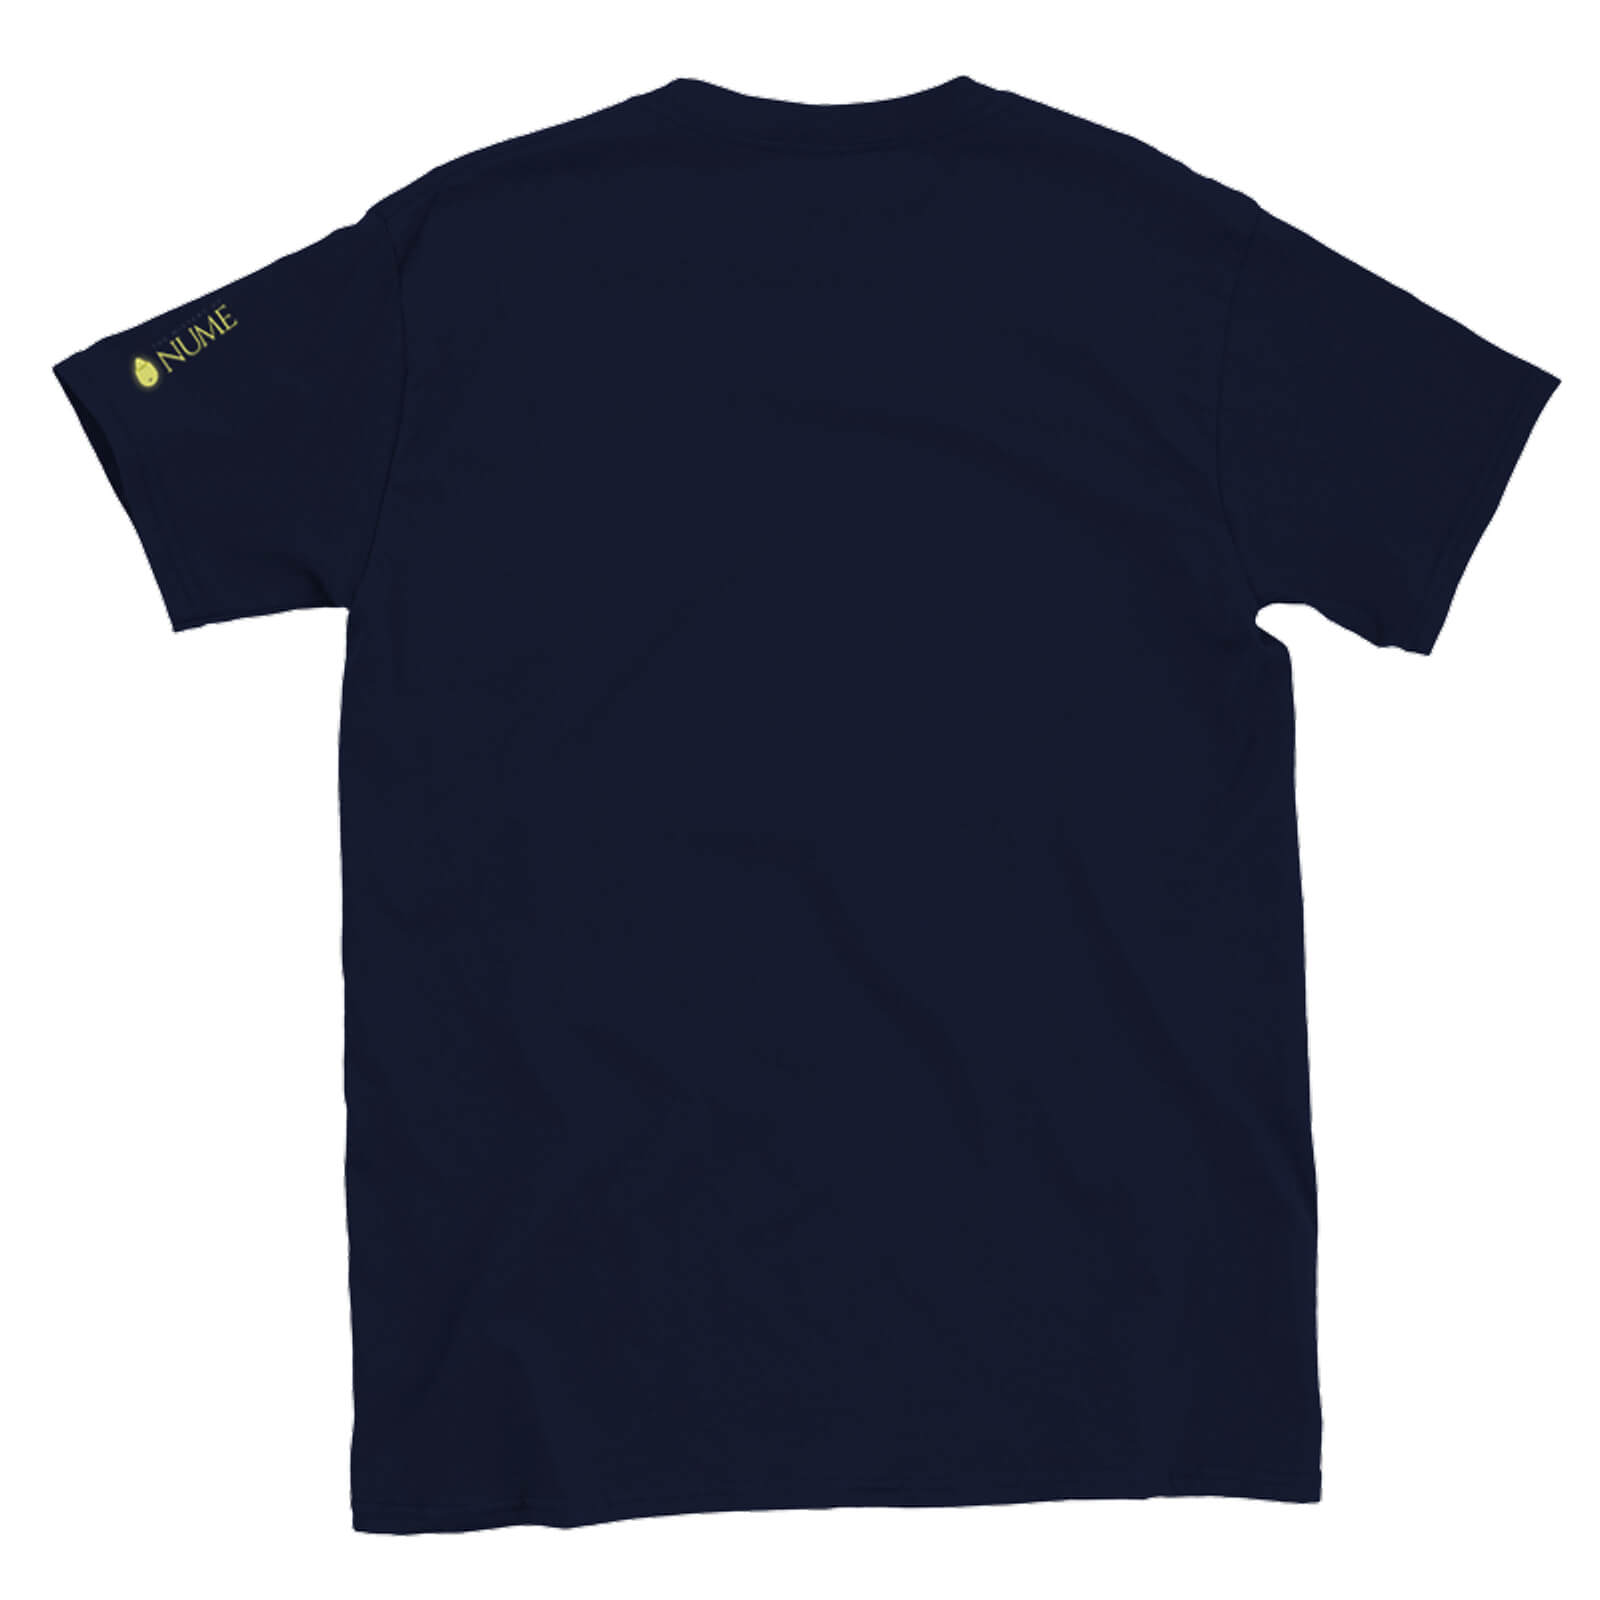 T-Shirt 2 - Img 02 - Nume World